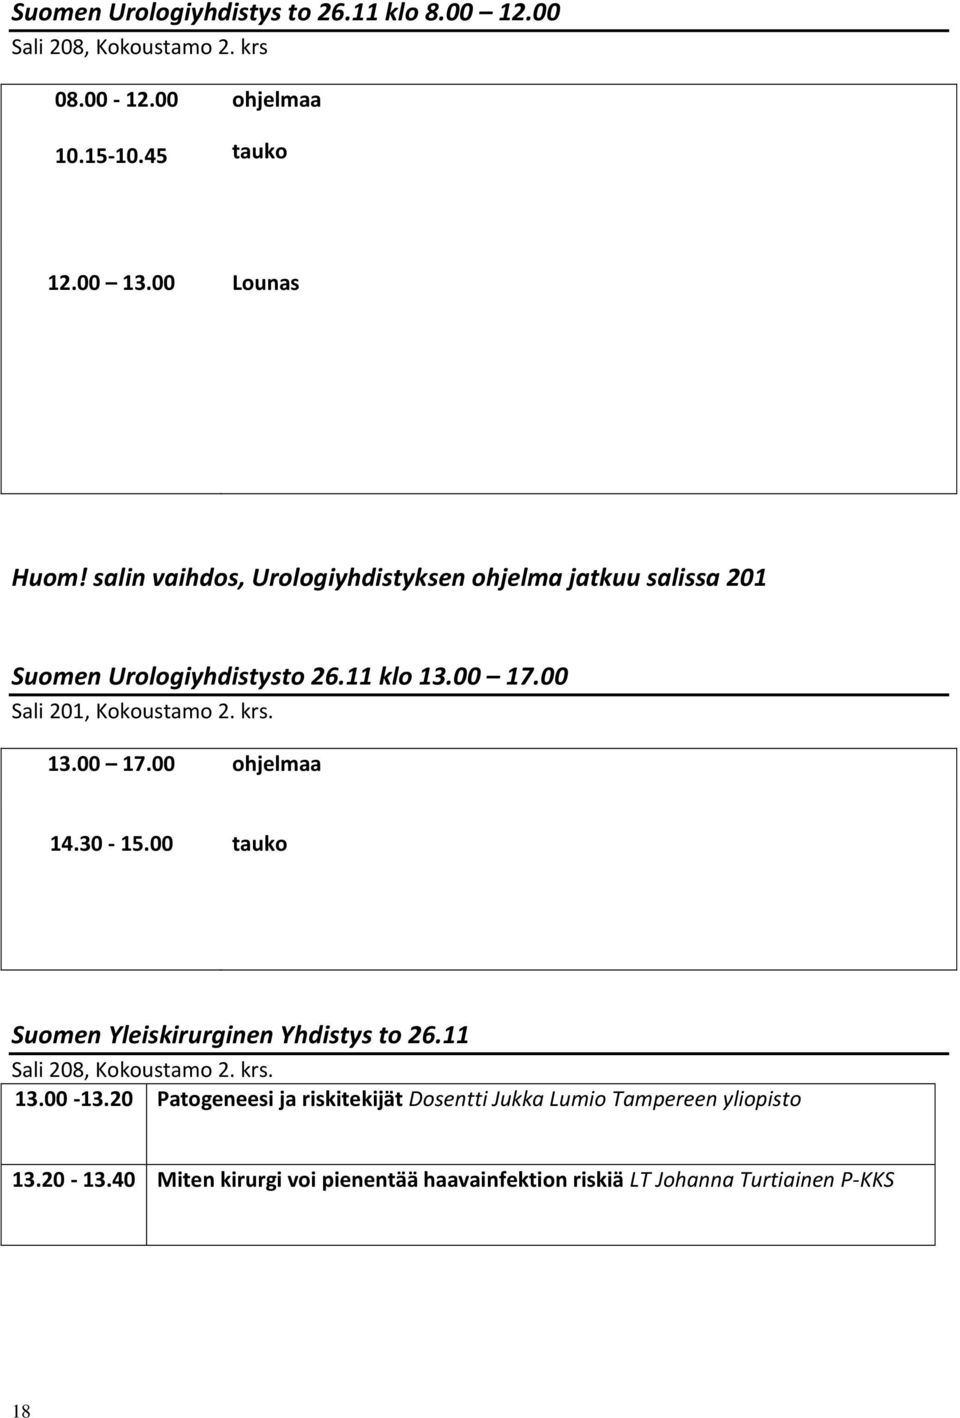 30-15.00 tauko Suomen Yleiskirurginen Yhdistys to 26.11 Sali 208, Kokoustamo 2. krs. 13.00-13.